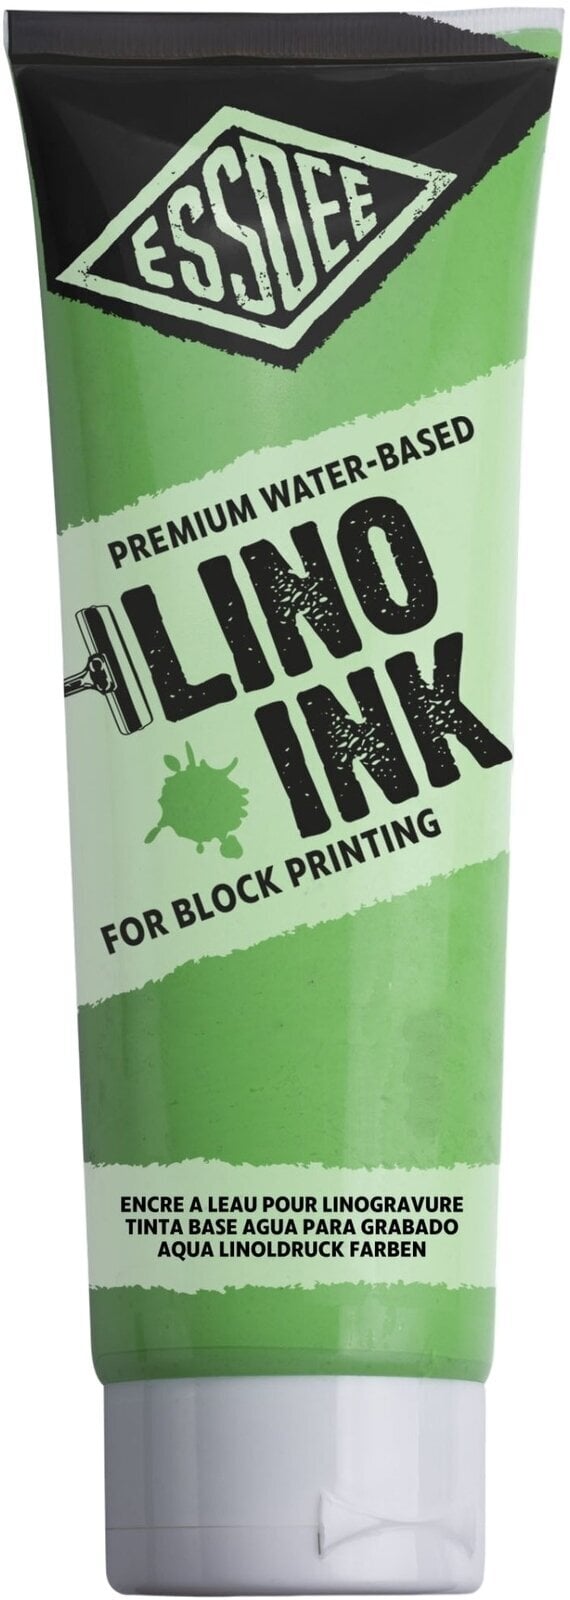 Verf voor linosnede Essdee Block Printing Ink Verf voor linosnede Fluorescent Green 300 ml